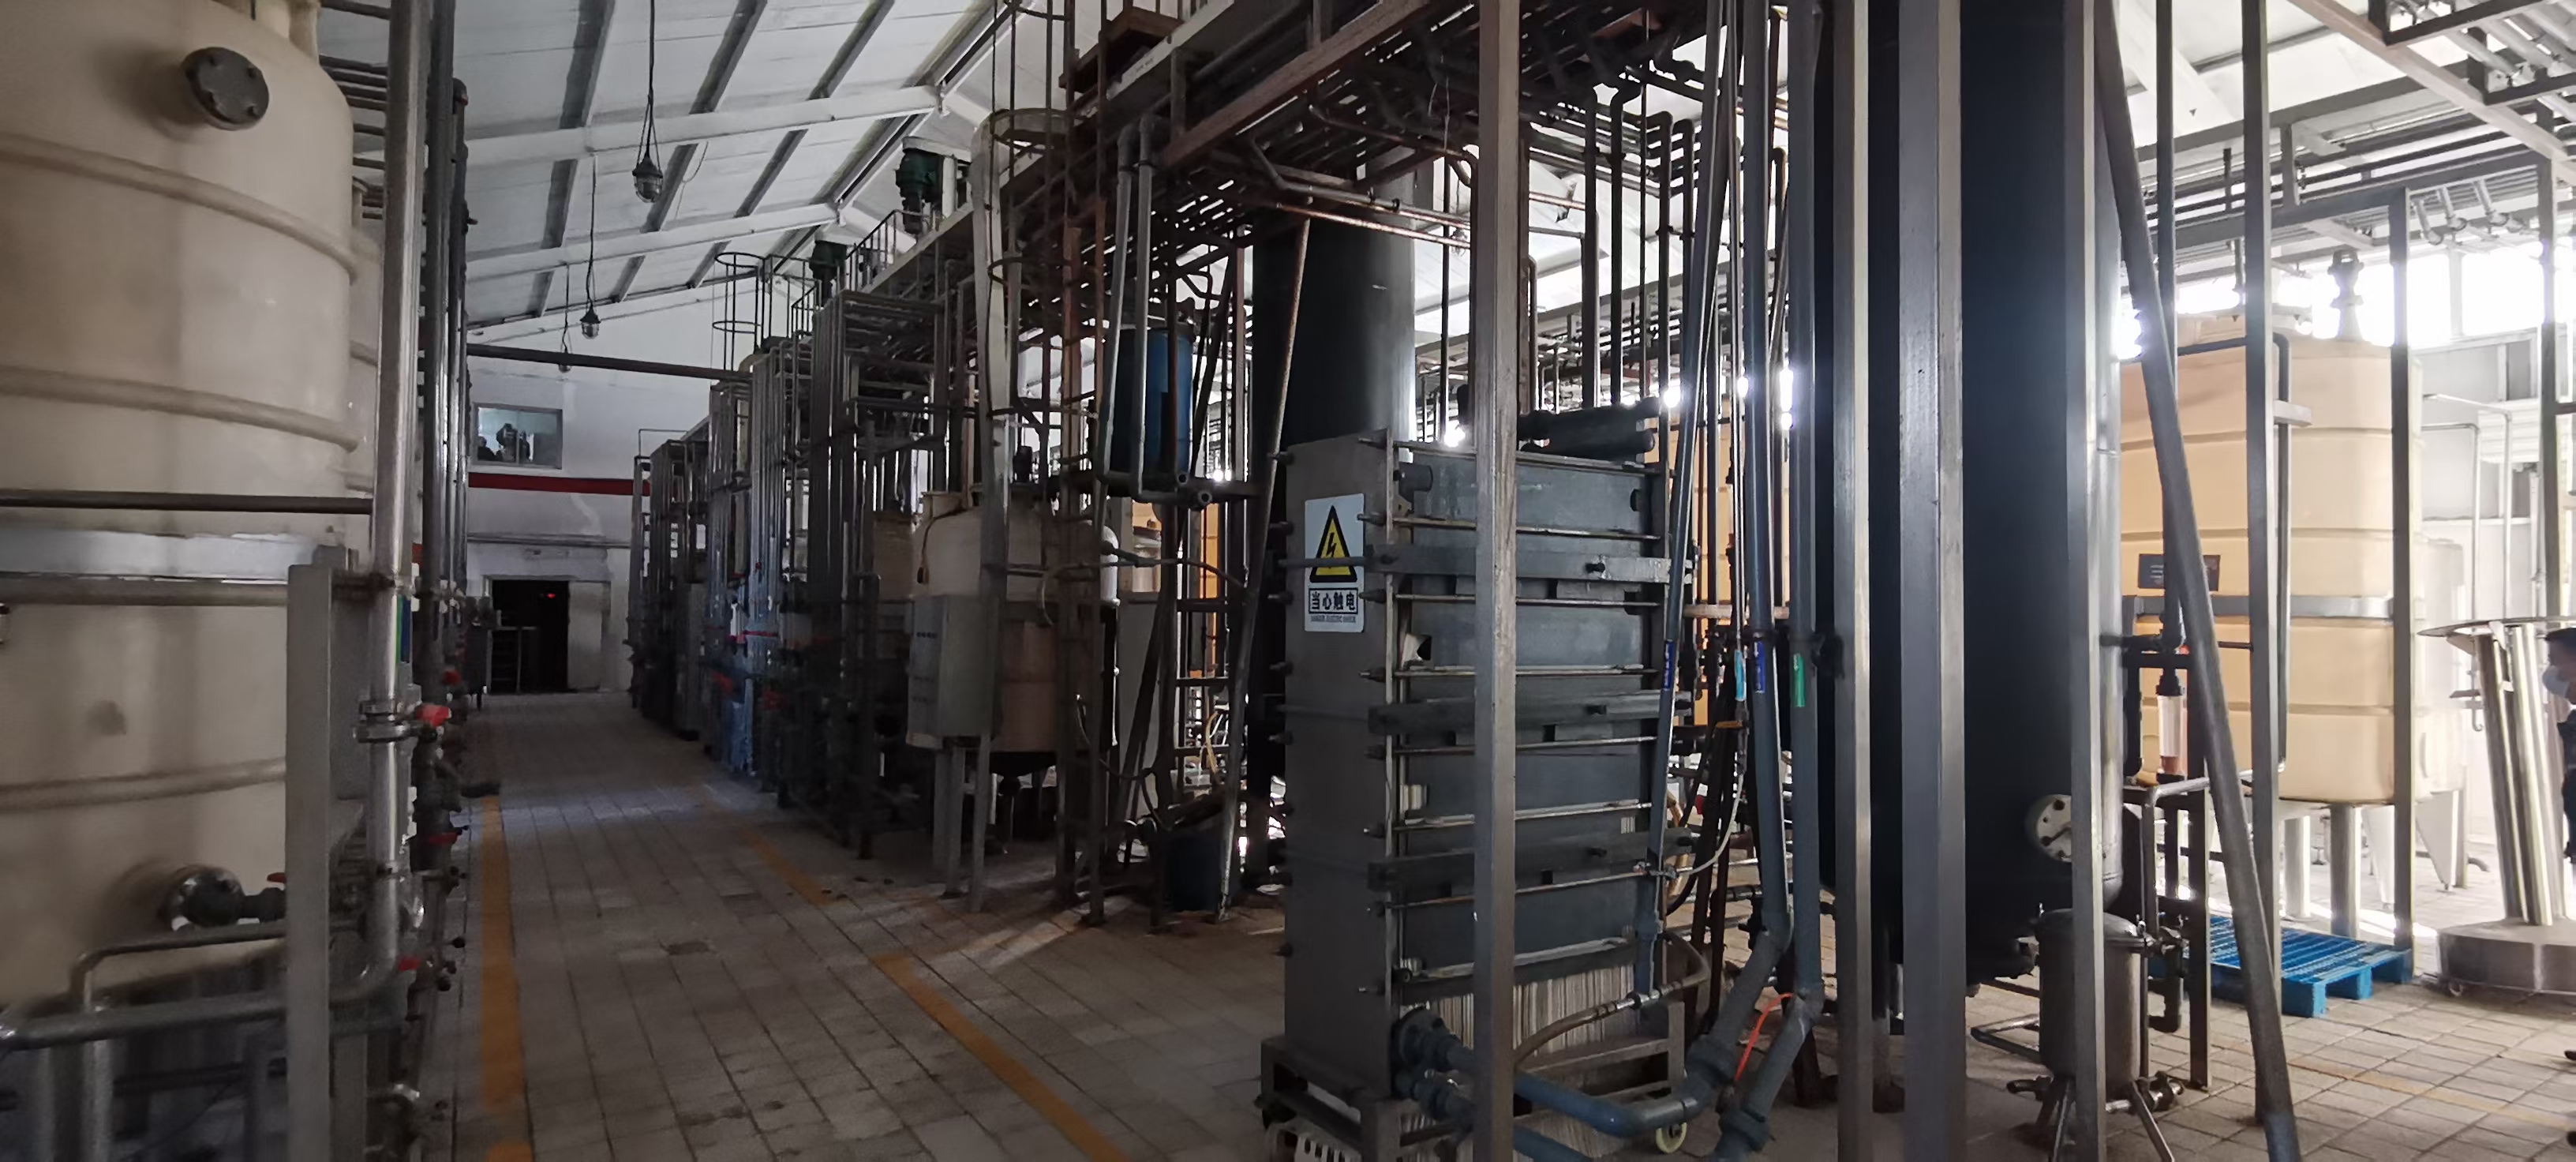 旧机械设备回收-广州白云区五金厂设备回收公司